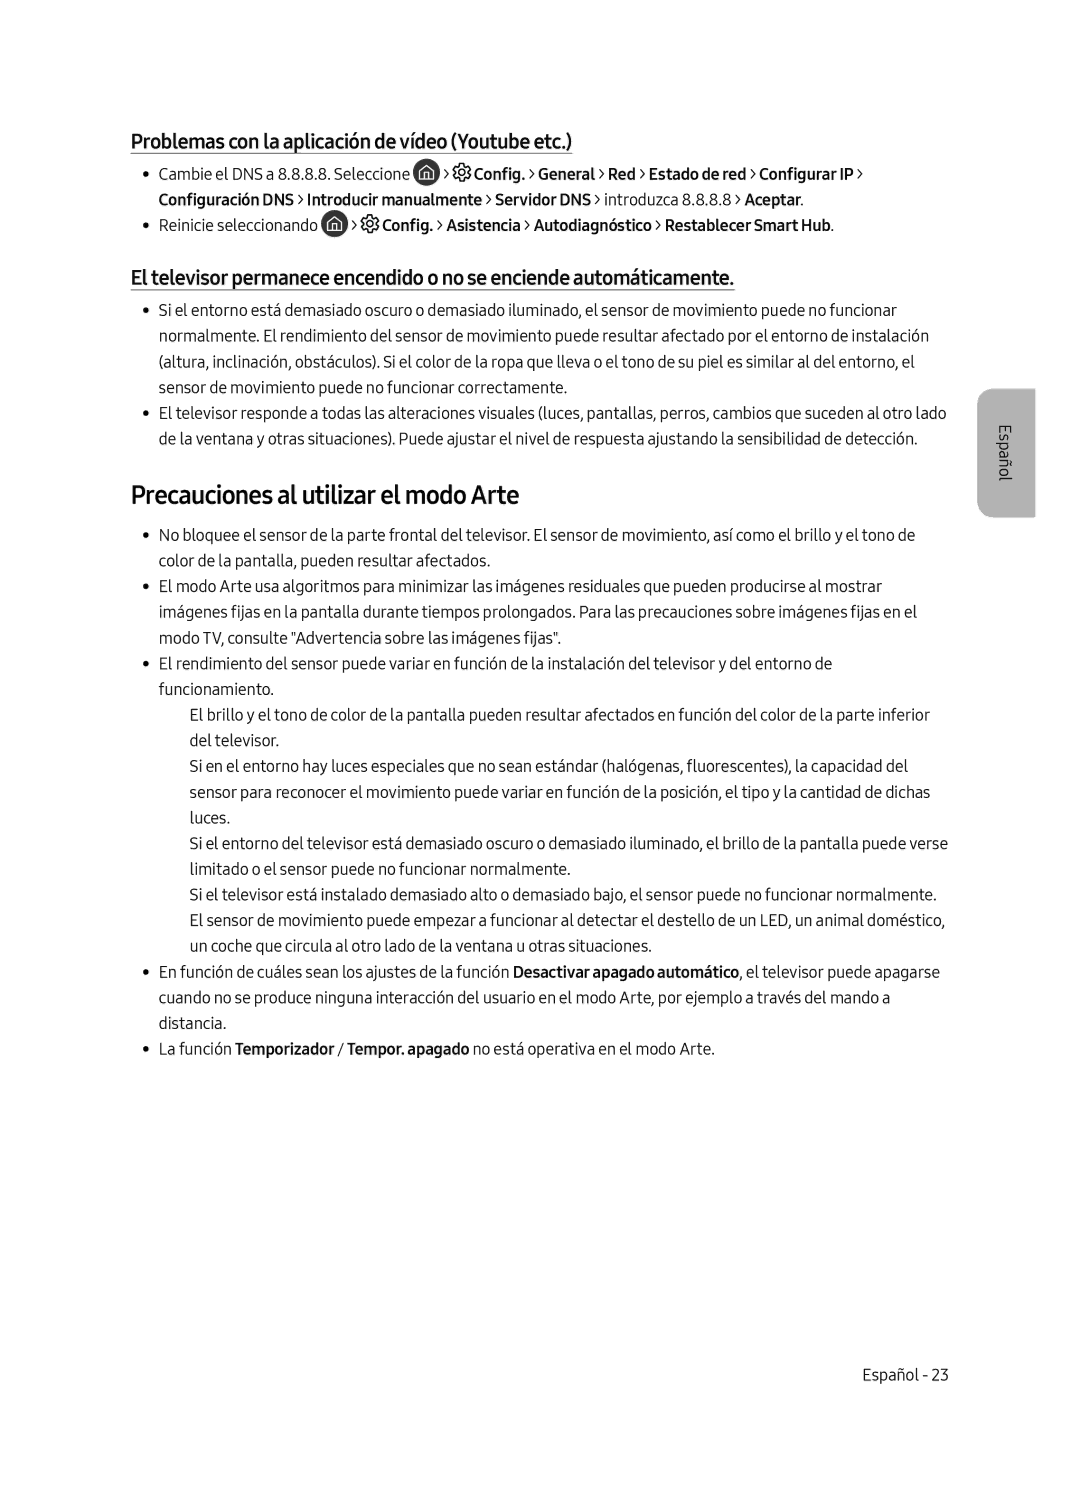 Samsung UE43LS003AUXXU manual Precauciones al utilizar el modo Arte, Problemas con la aplicación de vídeo Youtube etc 